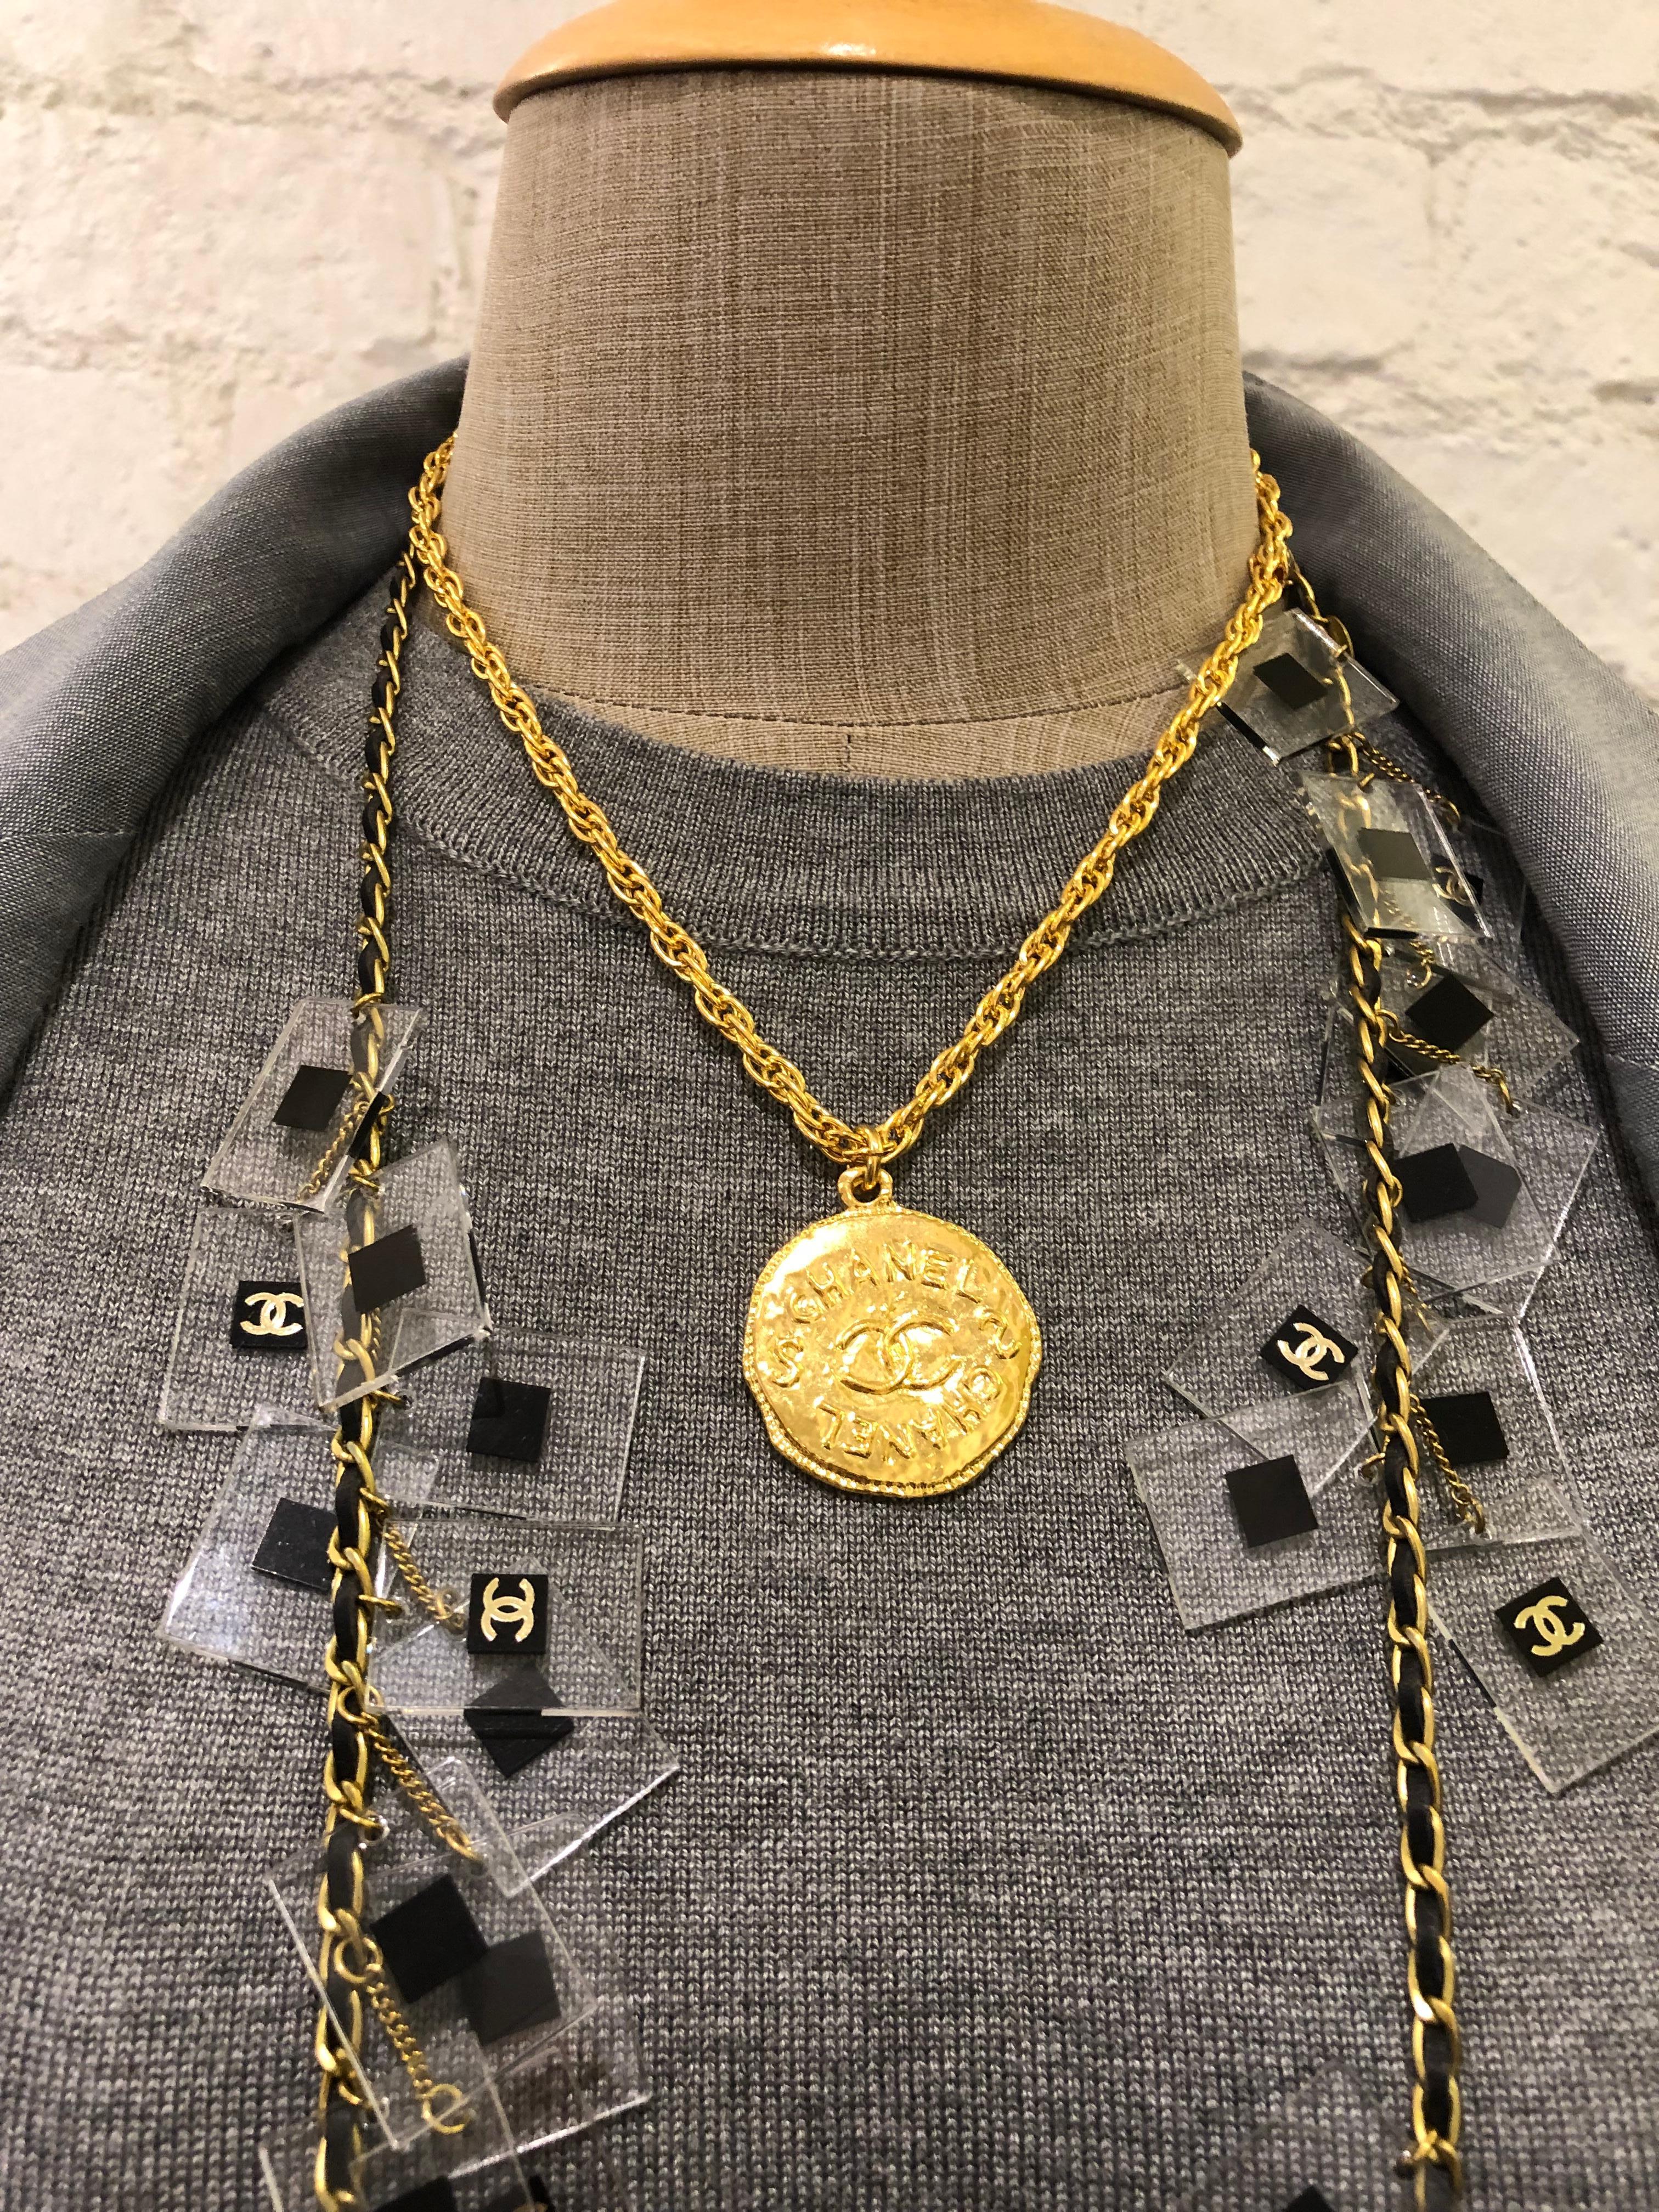 Ce collier court vintage CHANEL est composé d'une chaîne dorée ornée d'une breloque en forme de pièce de monnaie de style byzantin. Fermeture par anneau à ressort. Estampillé 93P CHANEL fabriqué en France. Mesure environ 44 cm Diamètre de la